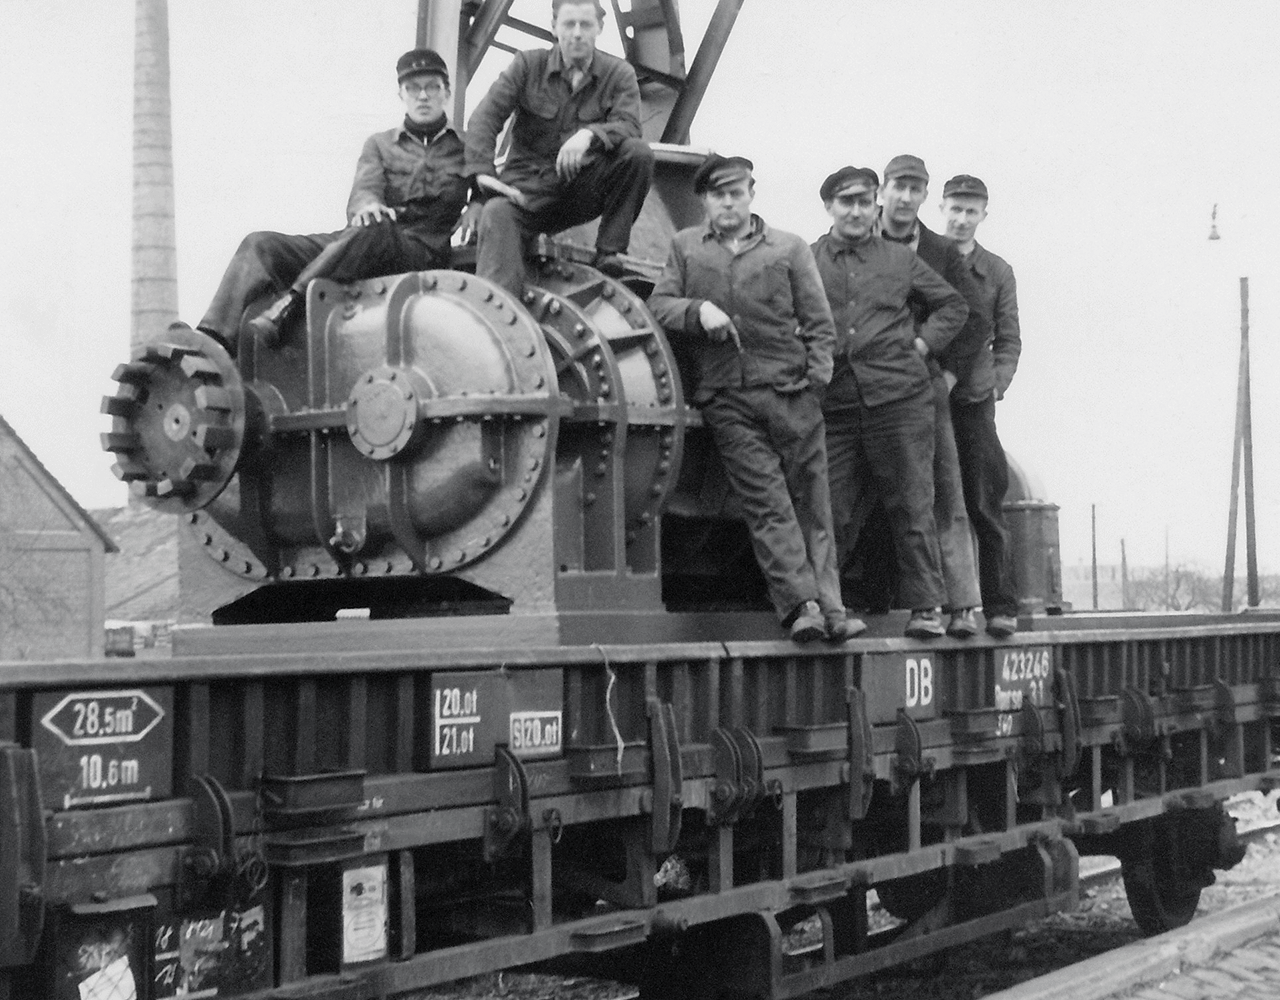 Darbuotojų, sėdinčių ant rotacinės orpūtės, kuri geležinkeliu bus gabenama į Berlyną, nuotrauka